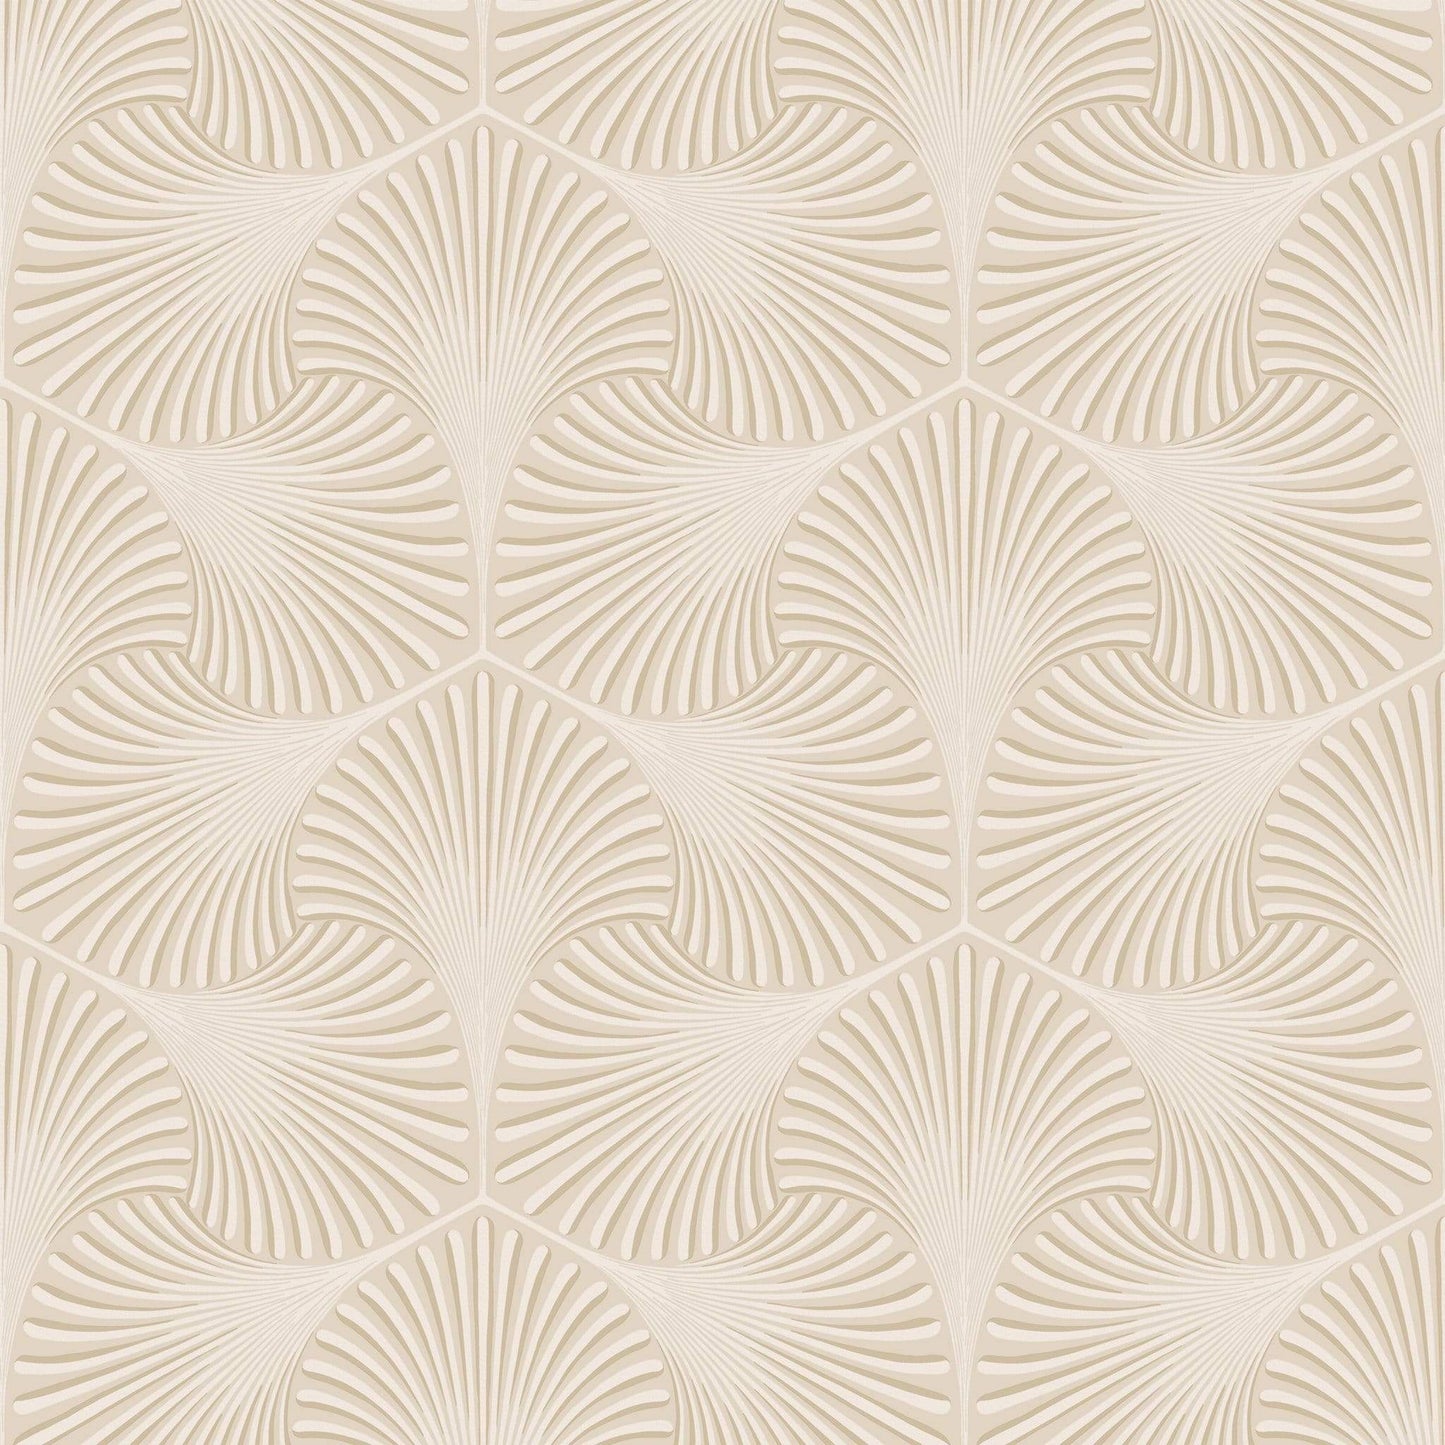 Wallpaper  -  Holden Varano Cream Wallpaper - 36014  -  50154754